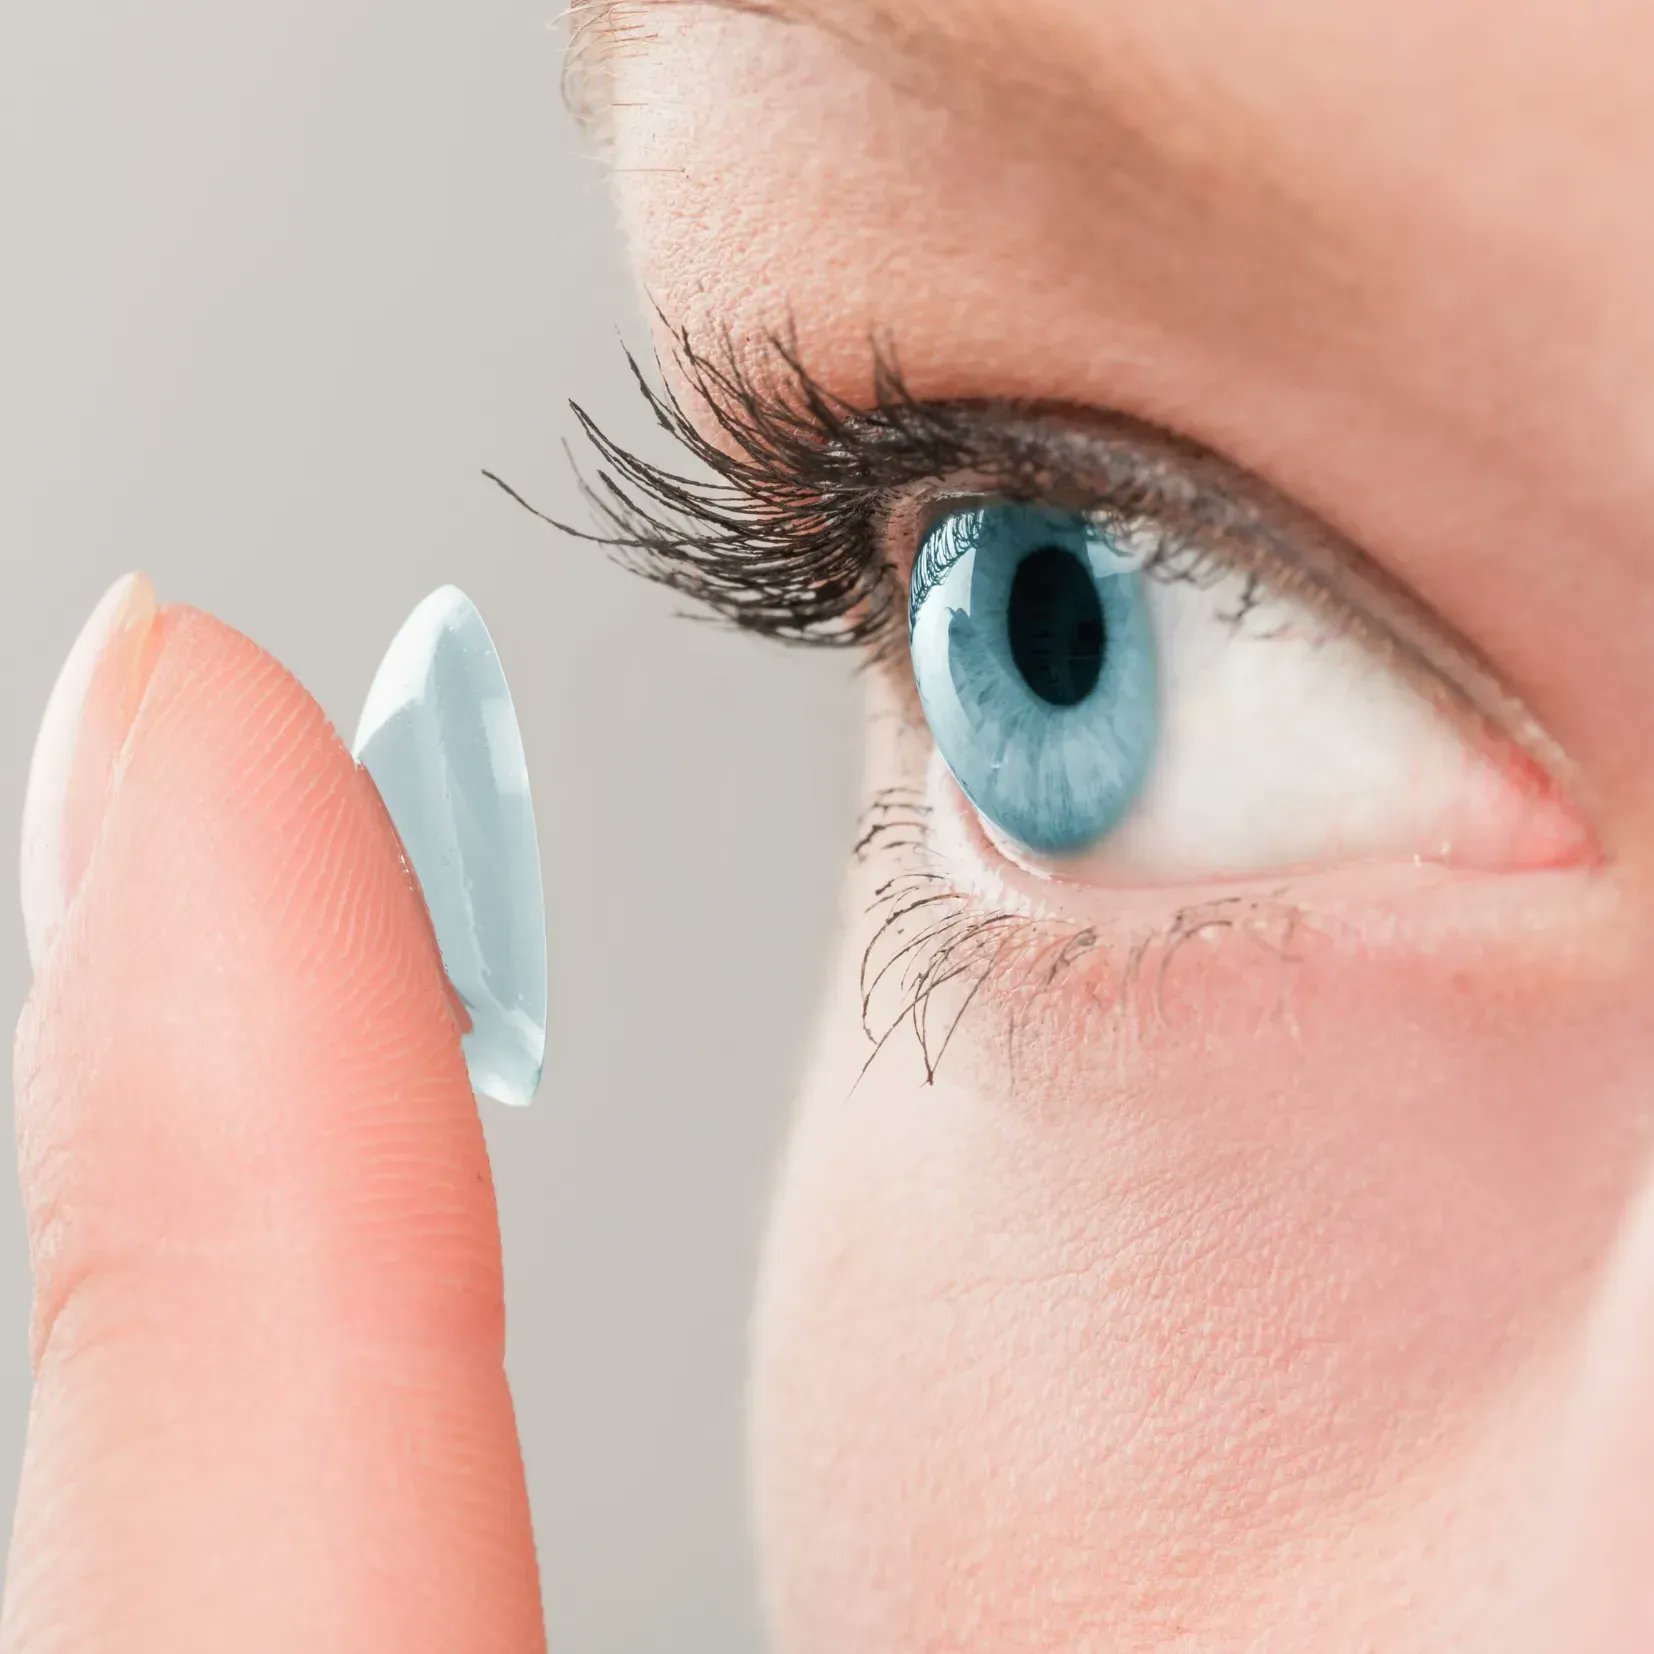 Склеральные контактные линзы для эффективного лечения заболеваний глаз